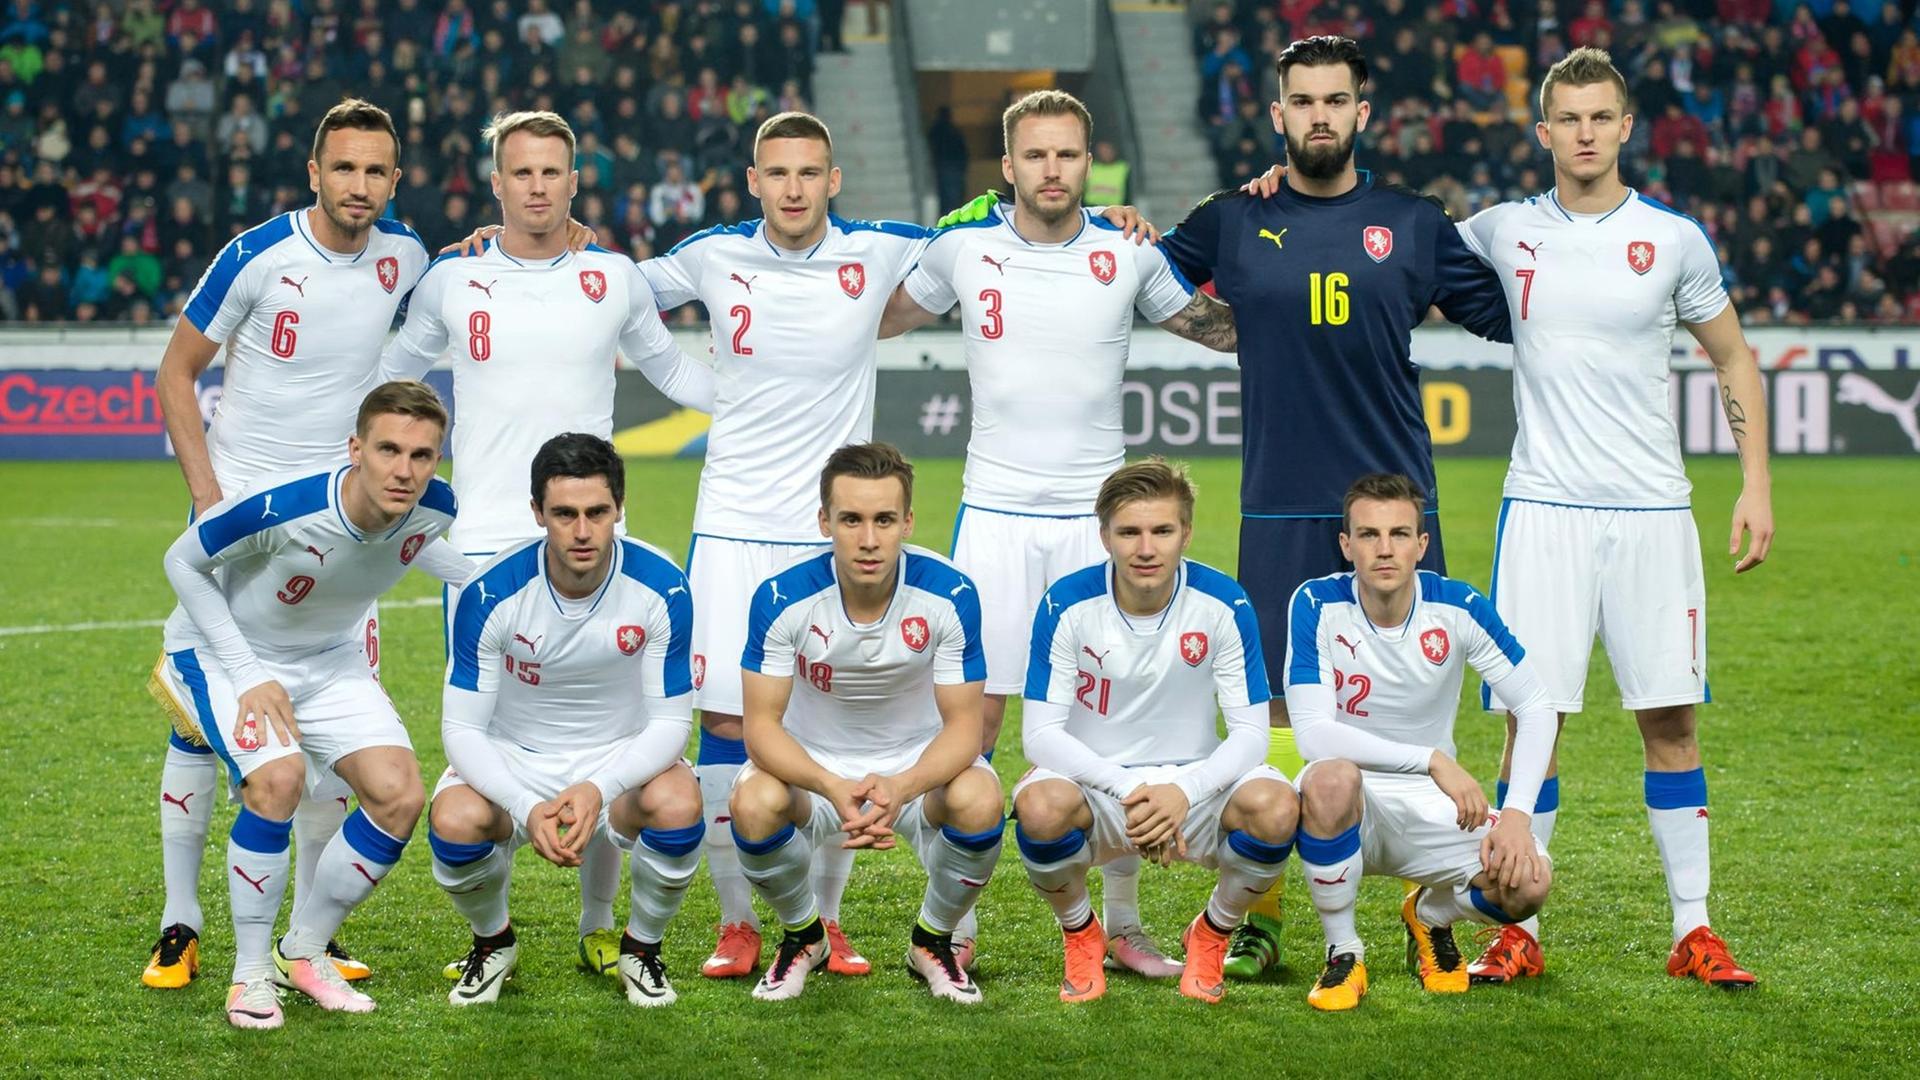 Die tschechische Nationalmannschaft bei einem Spiel am im März 2016